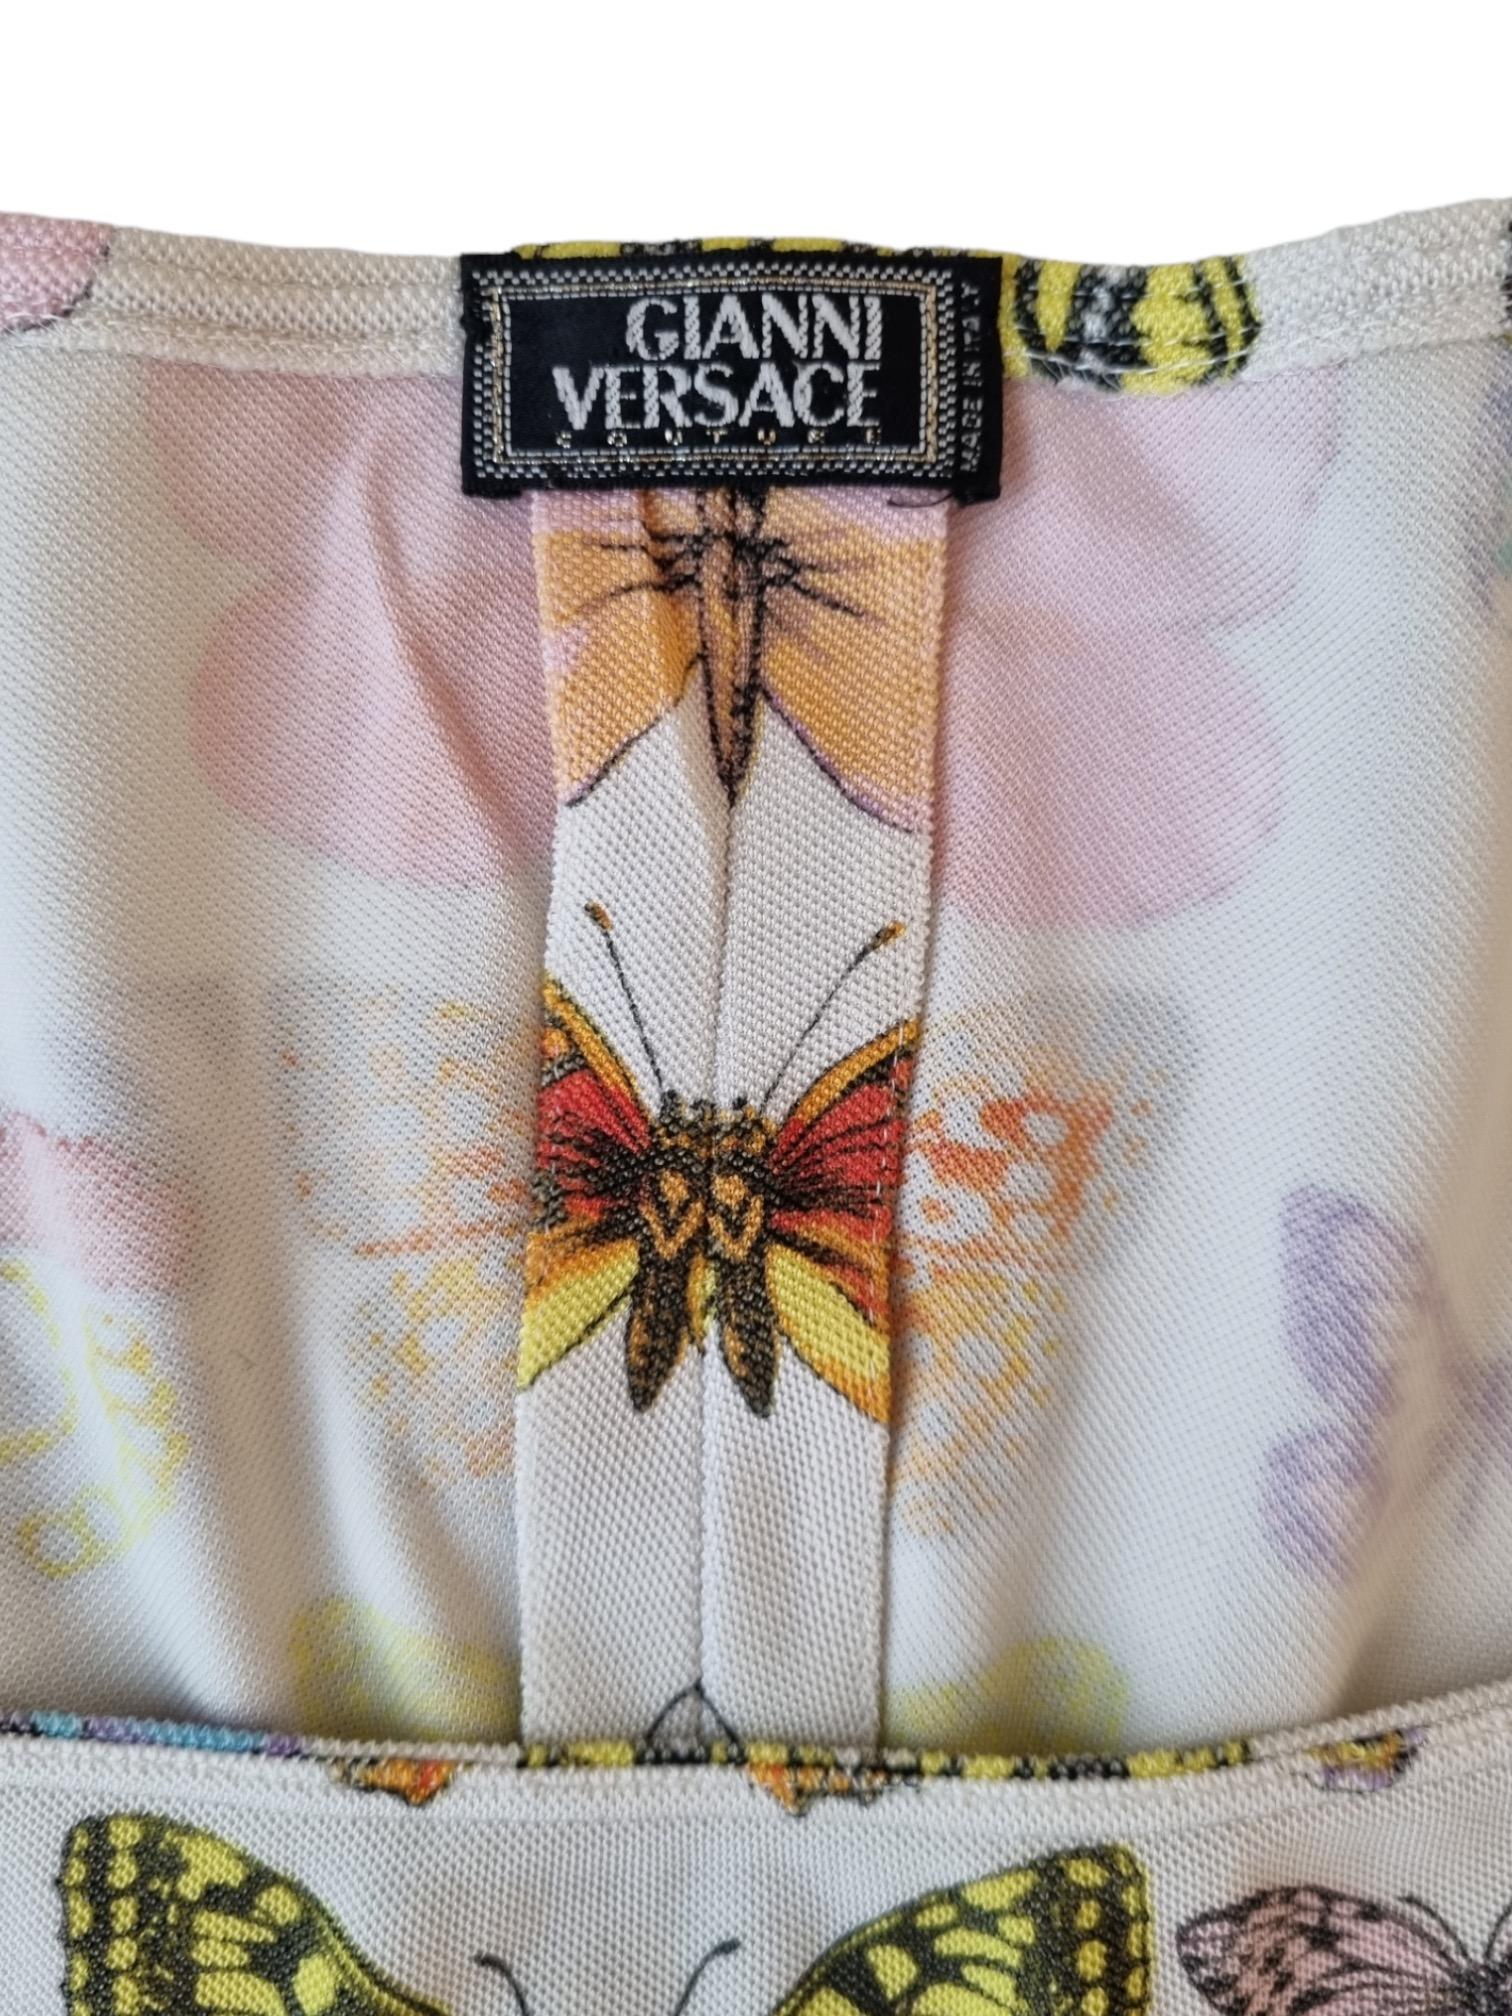 Robe iconique et super rare dans l'un des imprimés les plus emblématiques de Versace : l'imprimé papillon. Cette robe à l'imprimé papillon blanc a été portée sur le podium du défilé Versace S/S 1995. L'impression a été reproduite à de nombreuses